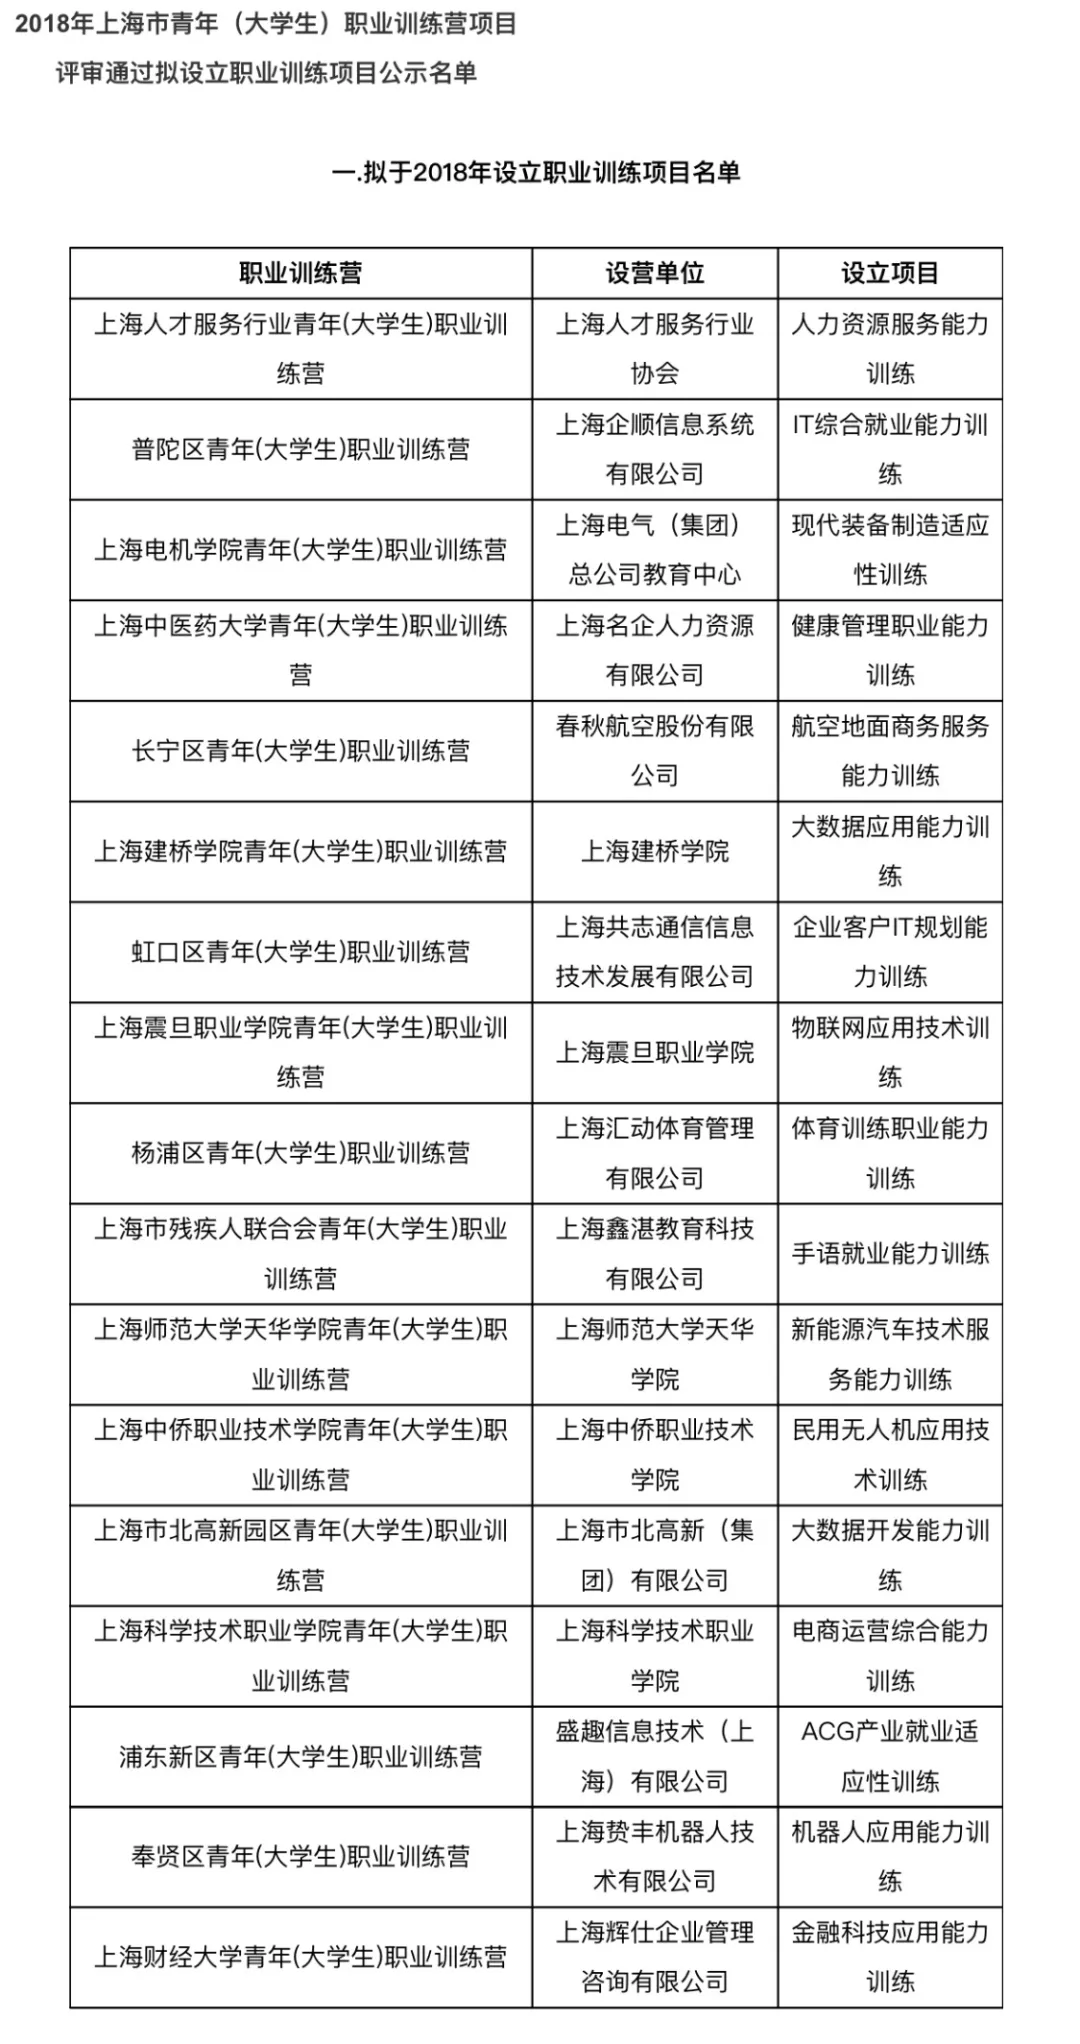 盛大游戏获批上海市就业促进中心2018“青年（大学生）职业训练营项目”资格